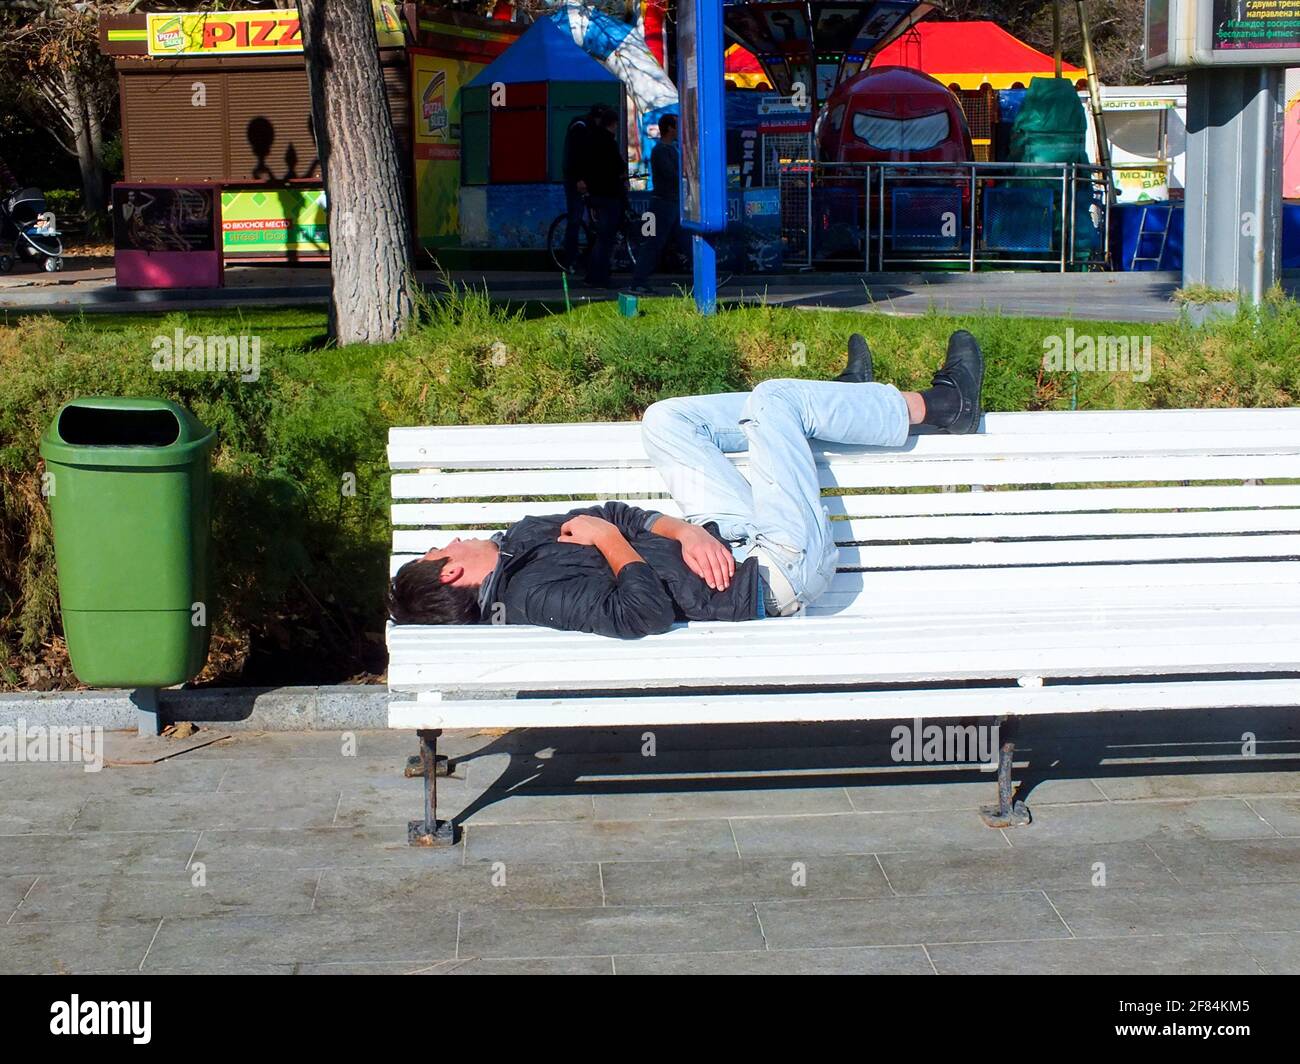 UKRAINE, YALTA - 29 JUILLET 2015: Homme sans domicile en jeans et veste noire dormant sur un banc blanc près de la poubelle verte dans la rue. Banque D'Images